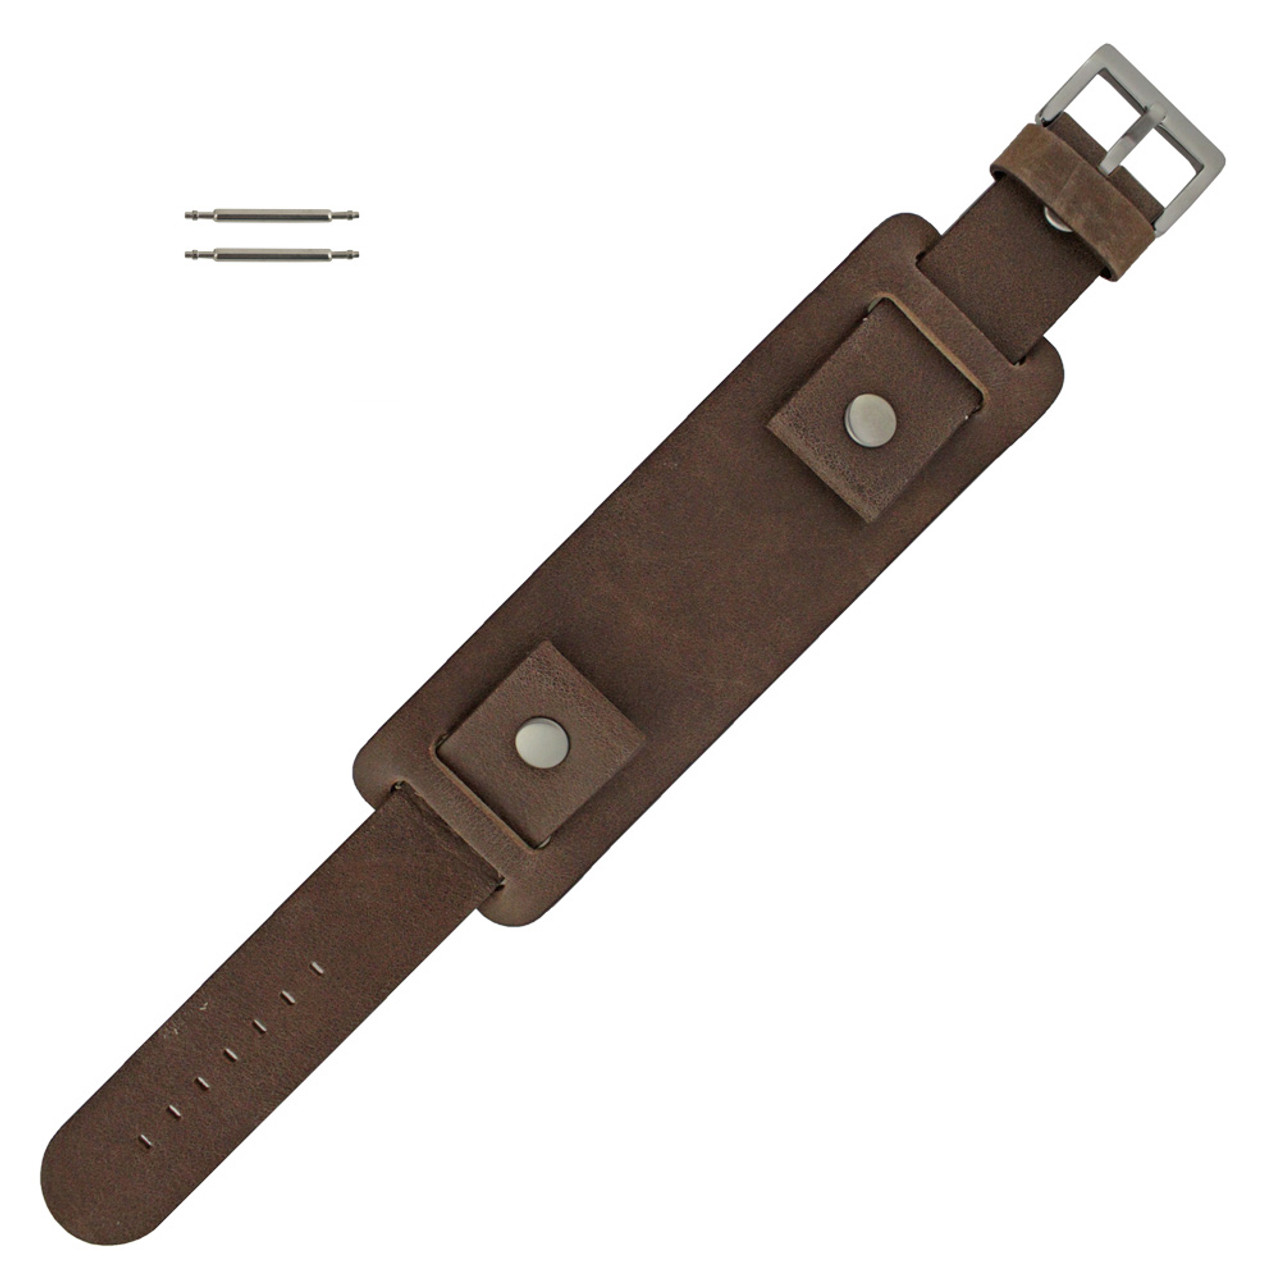 Wide watch strap distressed leather, Bund strap brown, cuff watch band,  20-26mm 